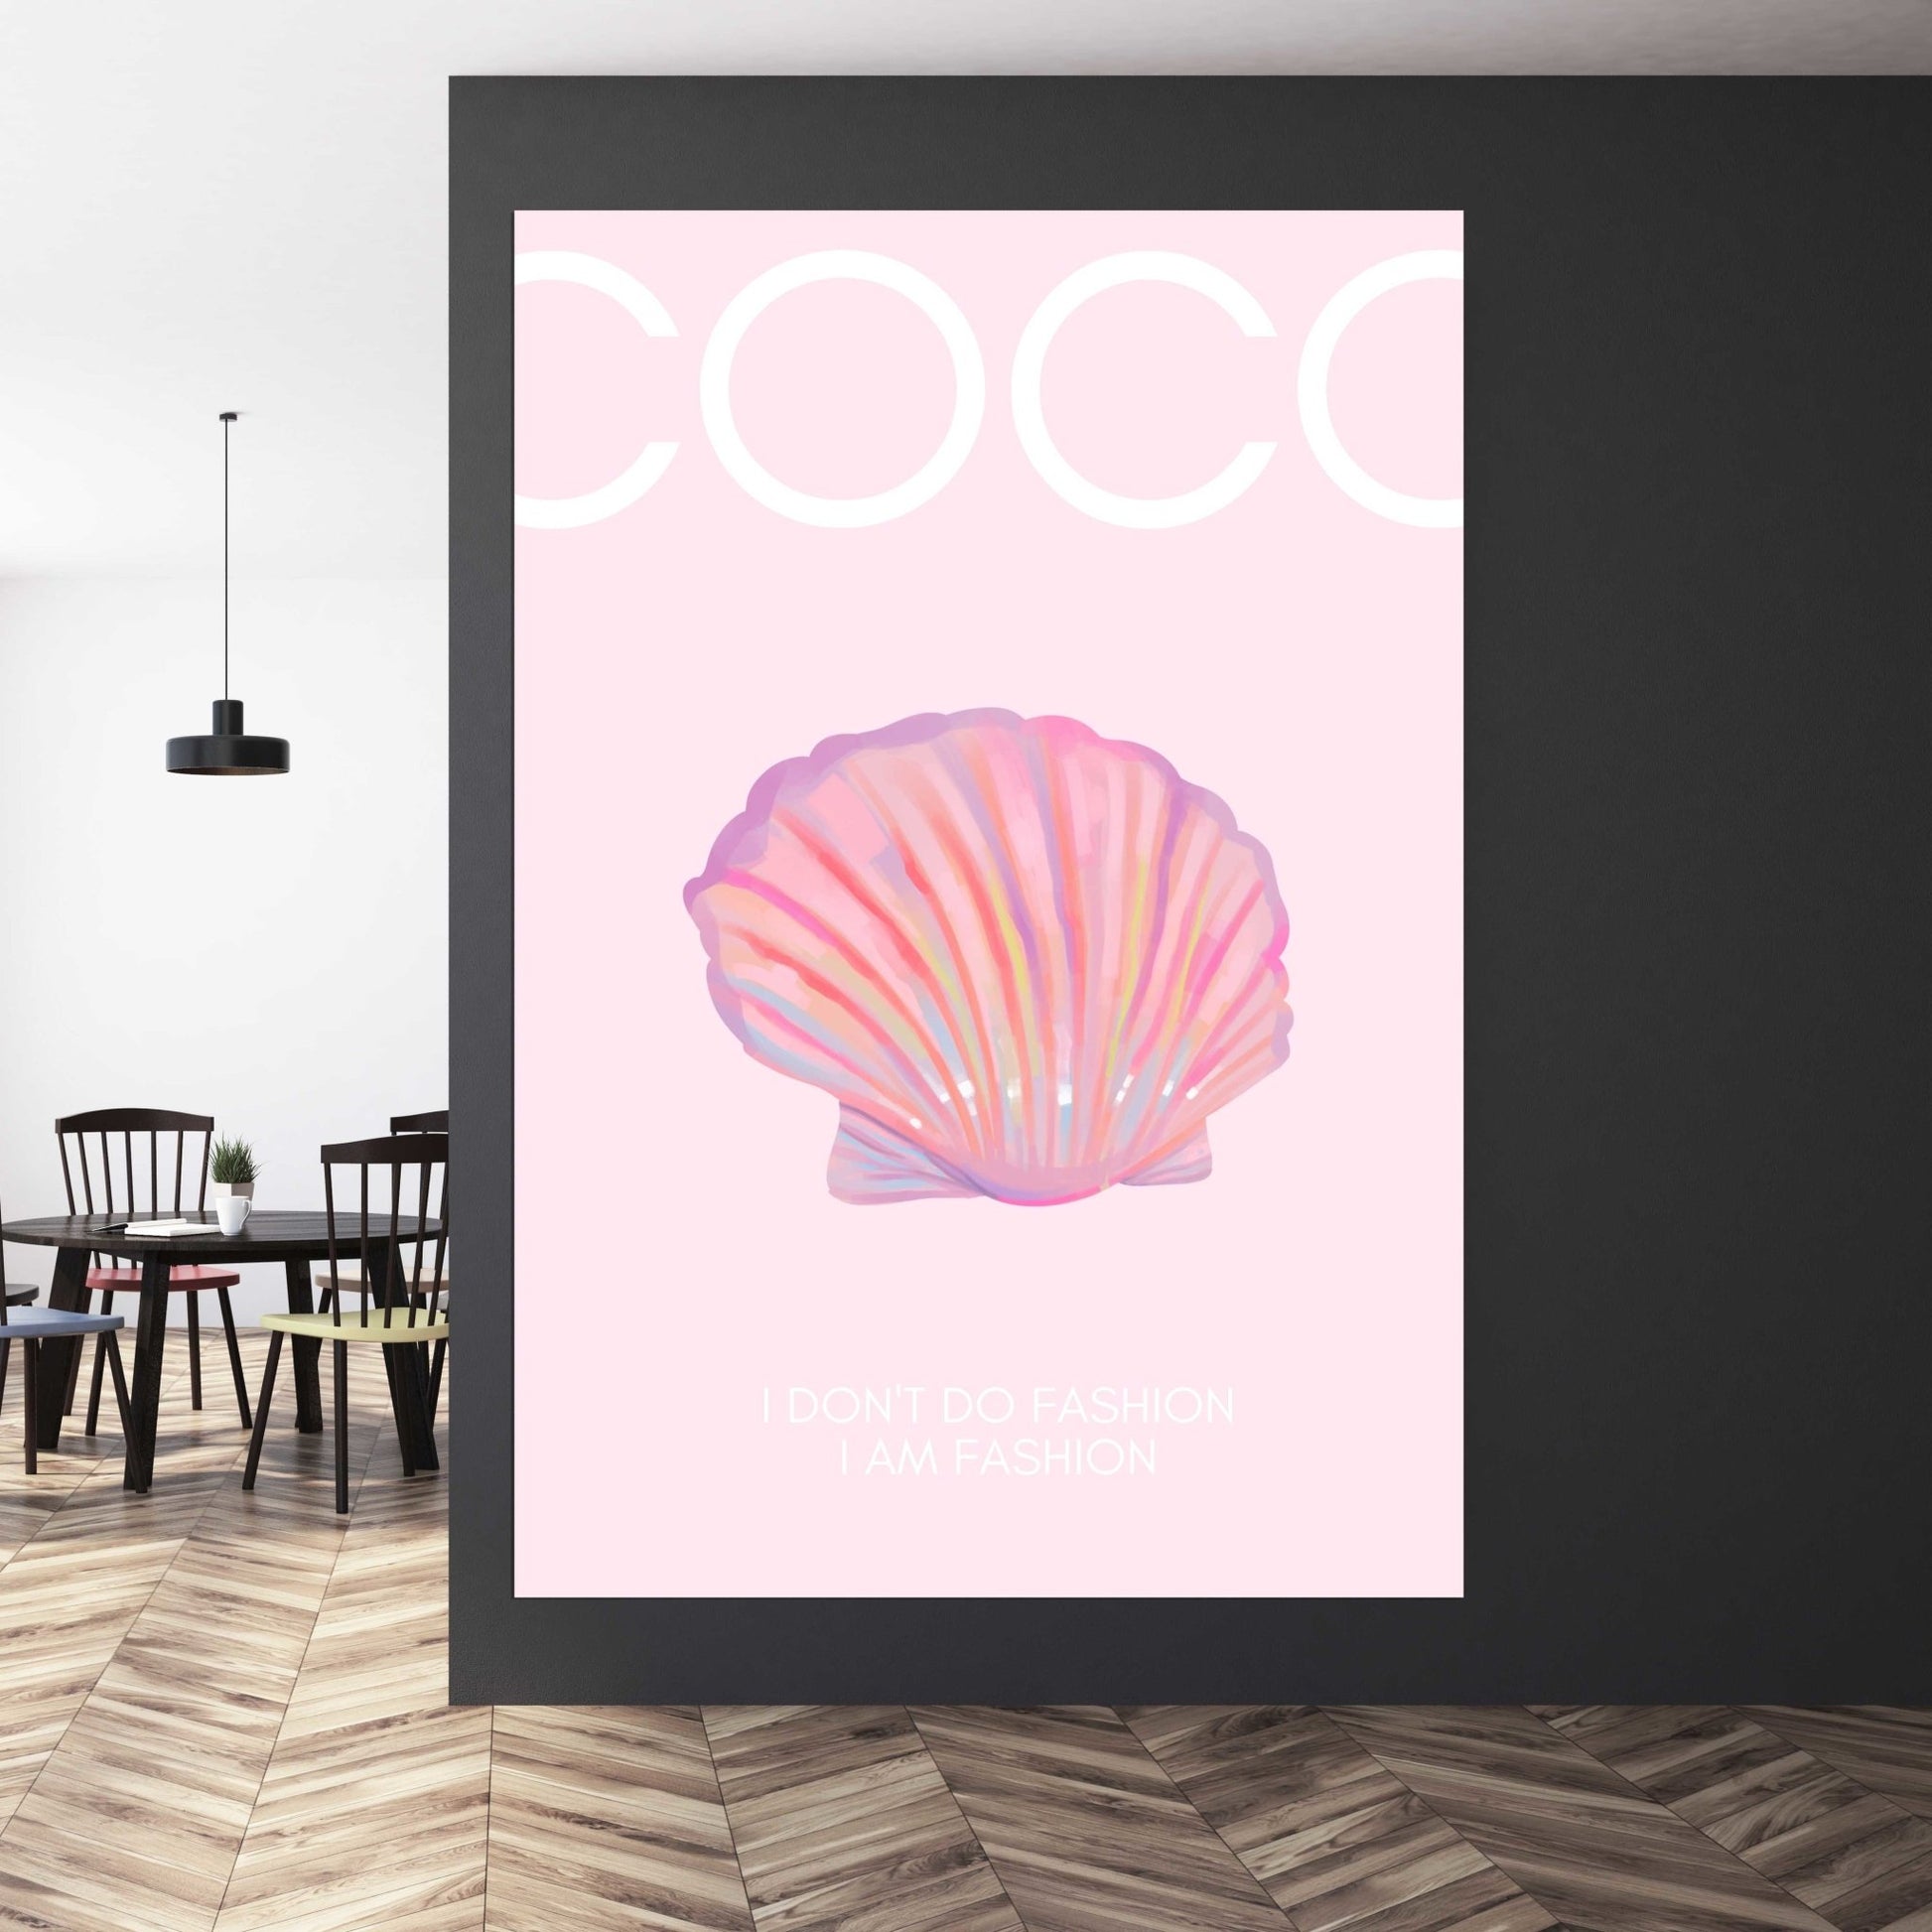 Coco Chanel Wall Art, High Fashion Wall Decor - Designer Pictures Wall –  Uniqli Decor